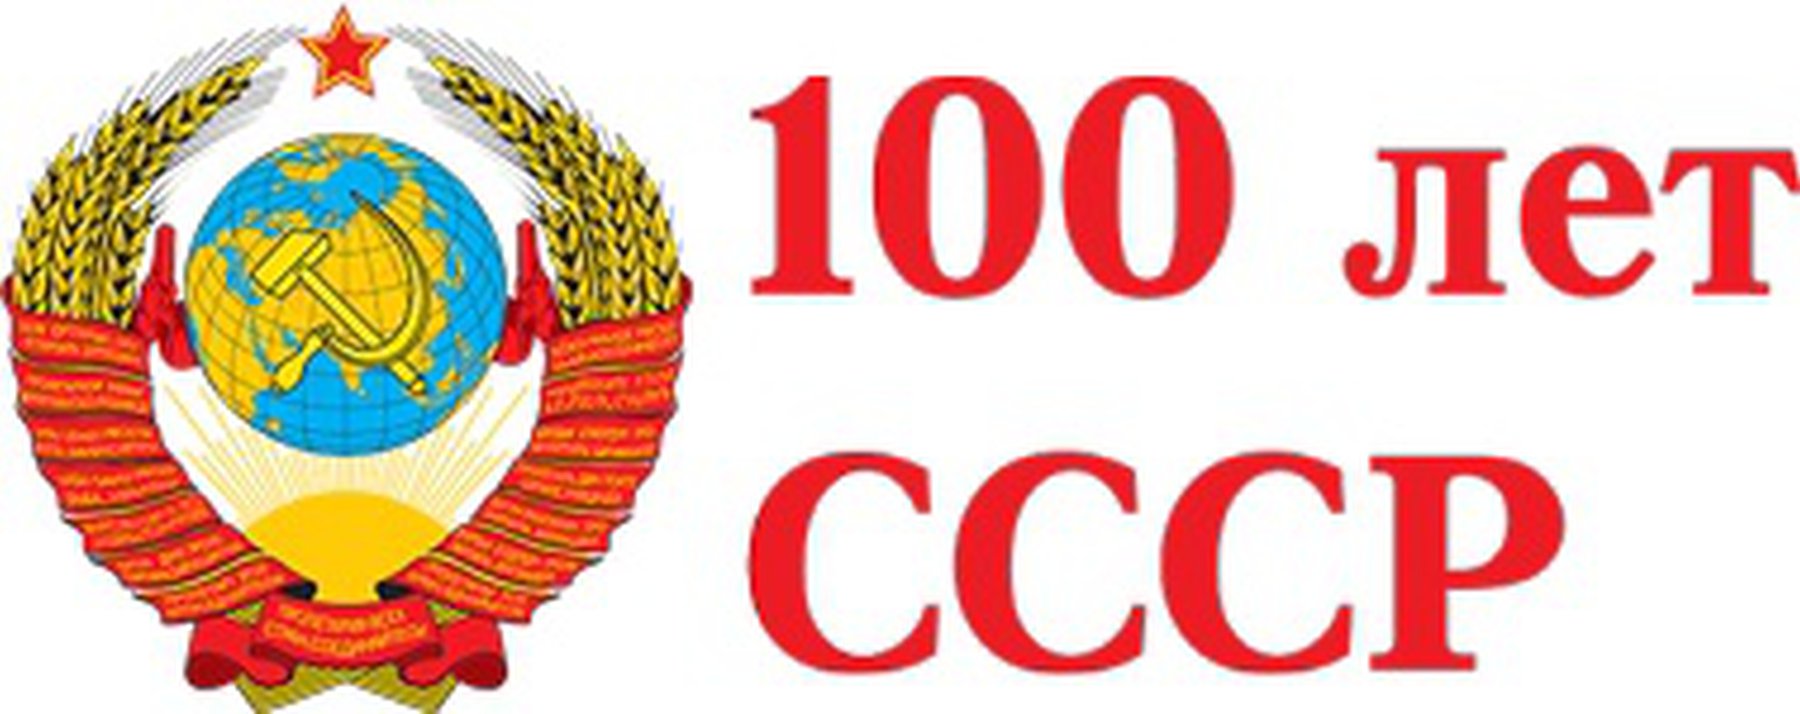 Логотипы к 100 летию СССР